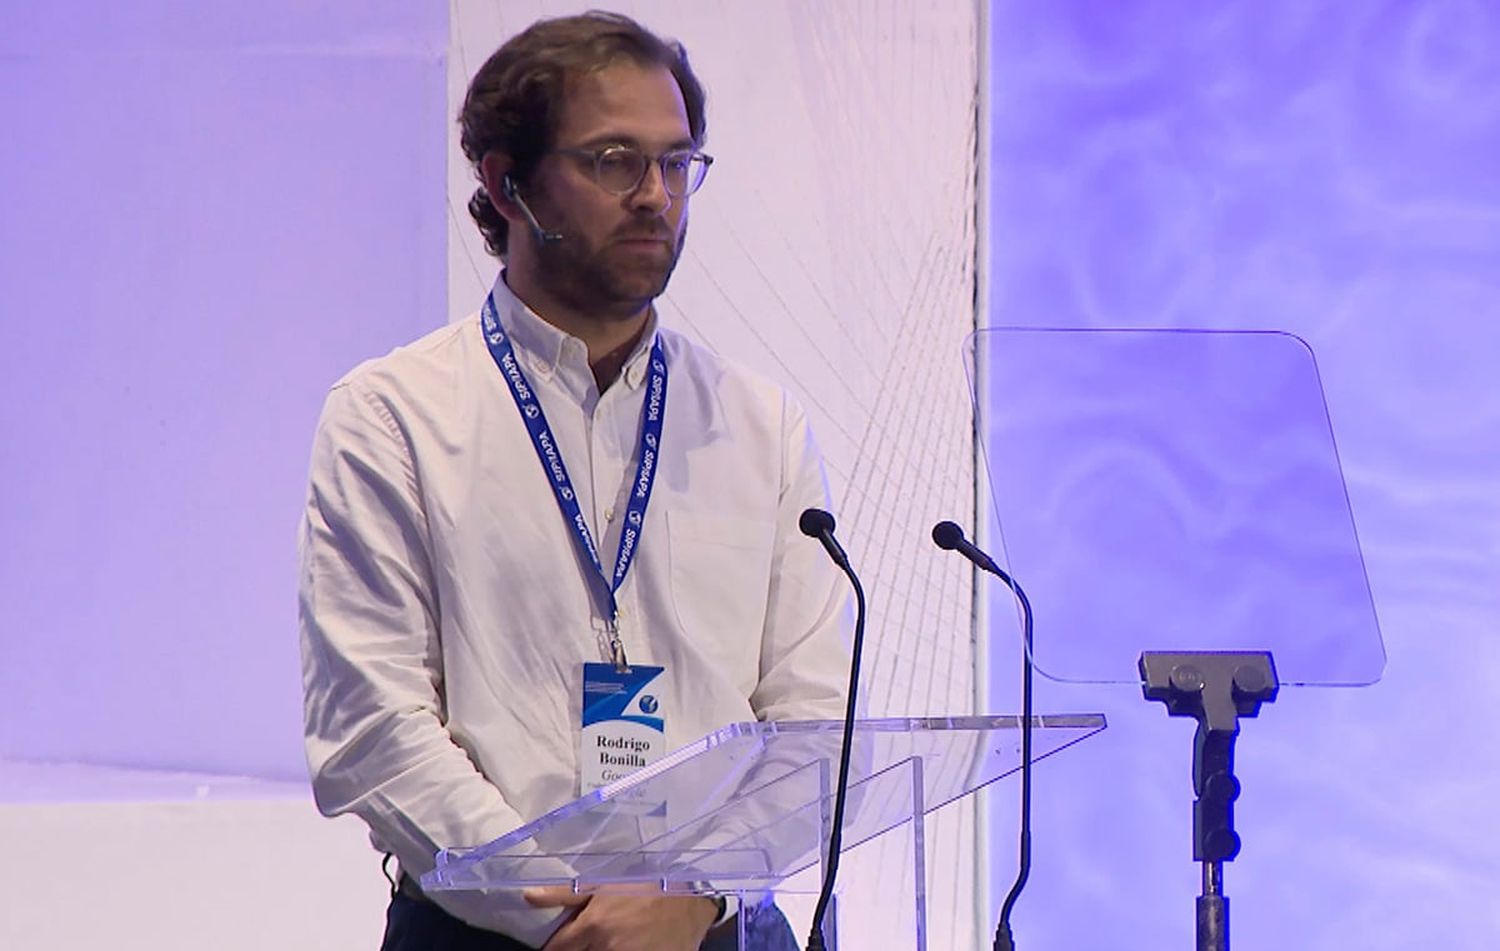 Rodrigo Bonilla de Google durante su intervenciín en la 79 Asamblea General de la SIP.